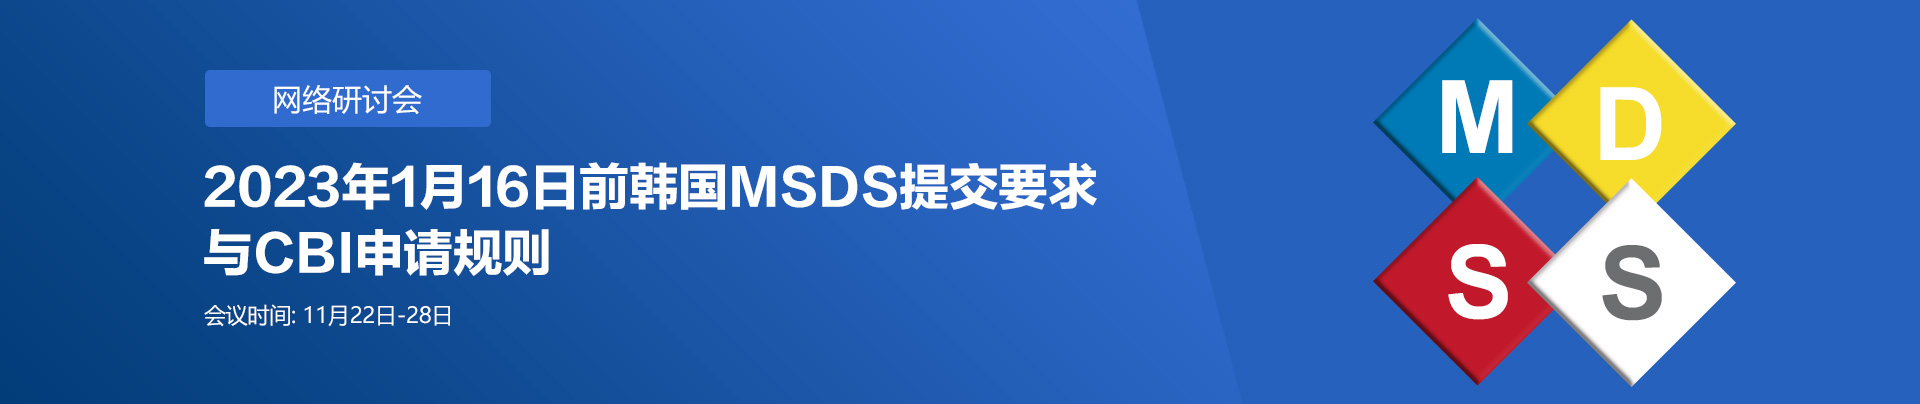 韩国,MSDS,网络研讨会,化学品,进口,GHS